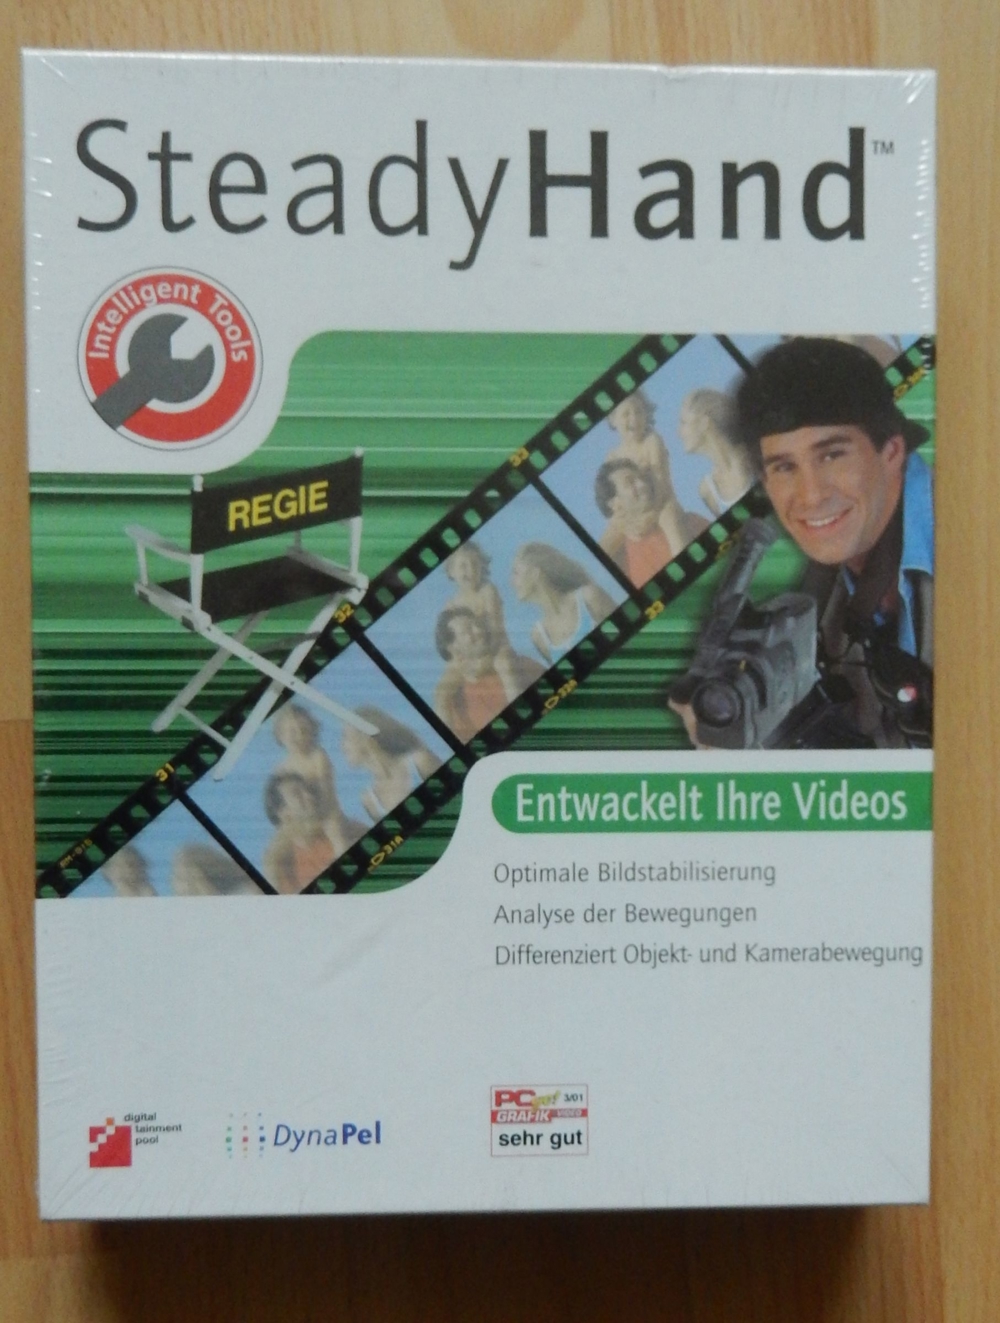 Steady Hand - Entwackelt Videos ISBN 3-936358-49-4 NEU